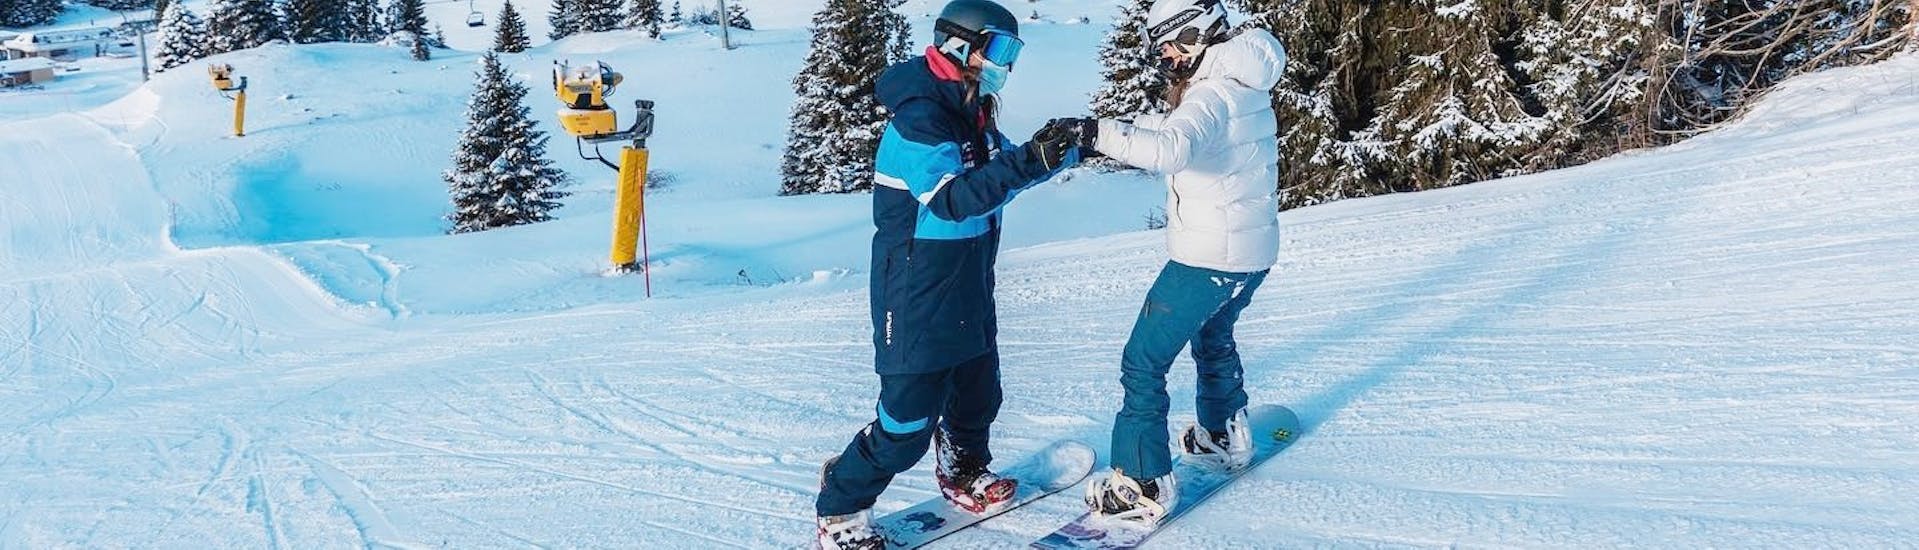 Un istruttore e uno snowboarder durante le Lezioni private di snowboard per tutte le età e i livelli.